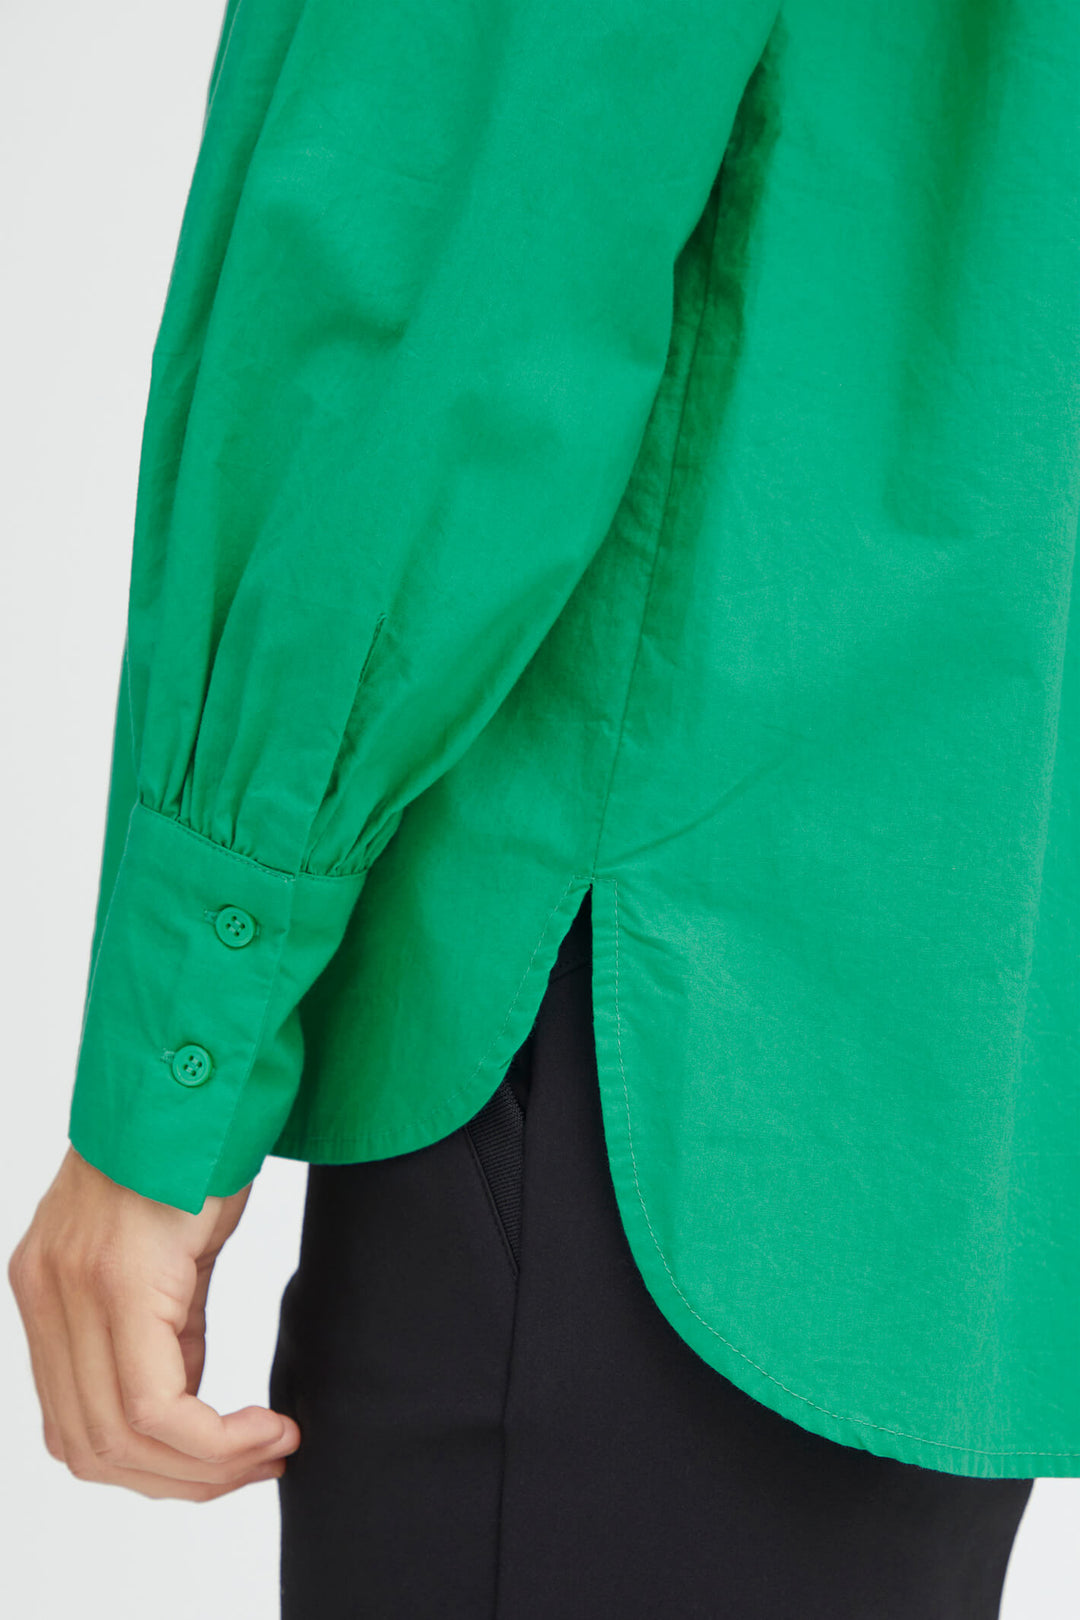 Fransa 20611665 FRPOP Green Shirt - Shirley Allum Boutique